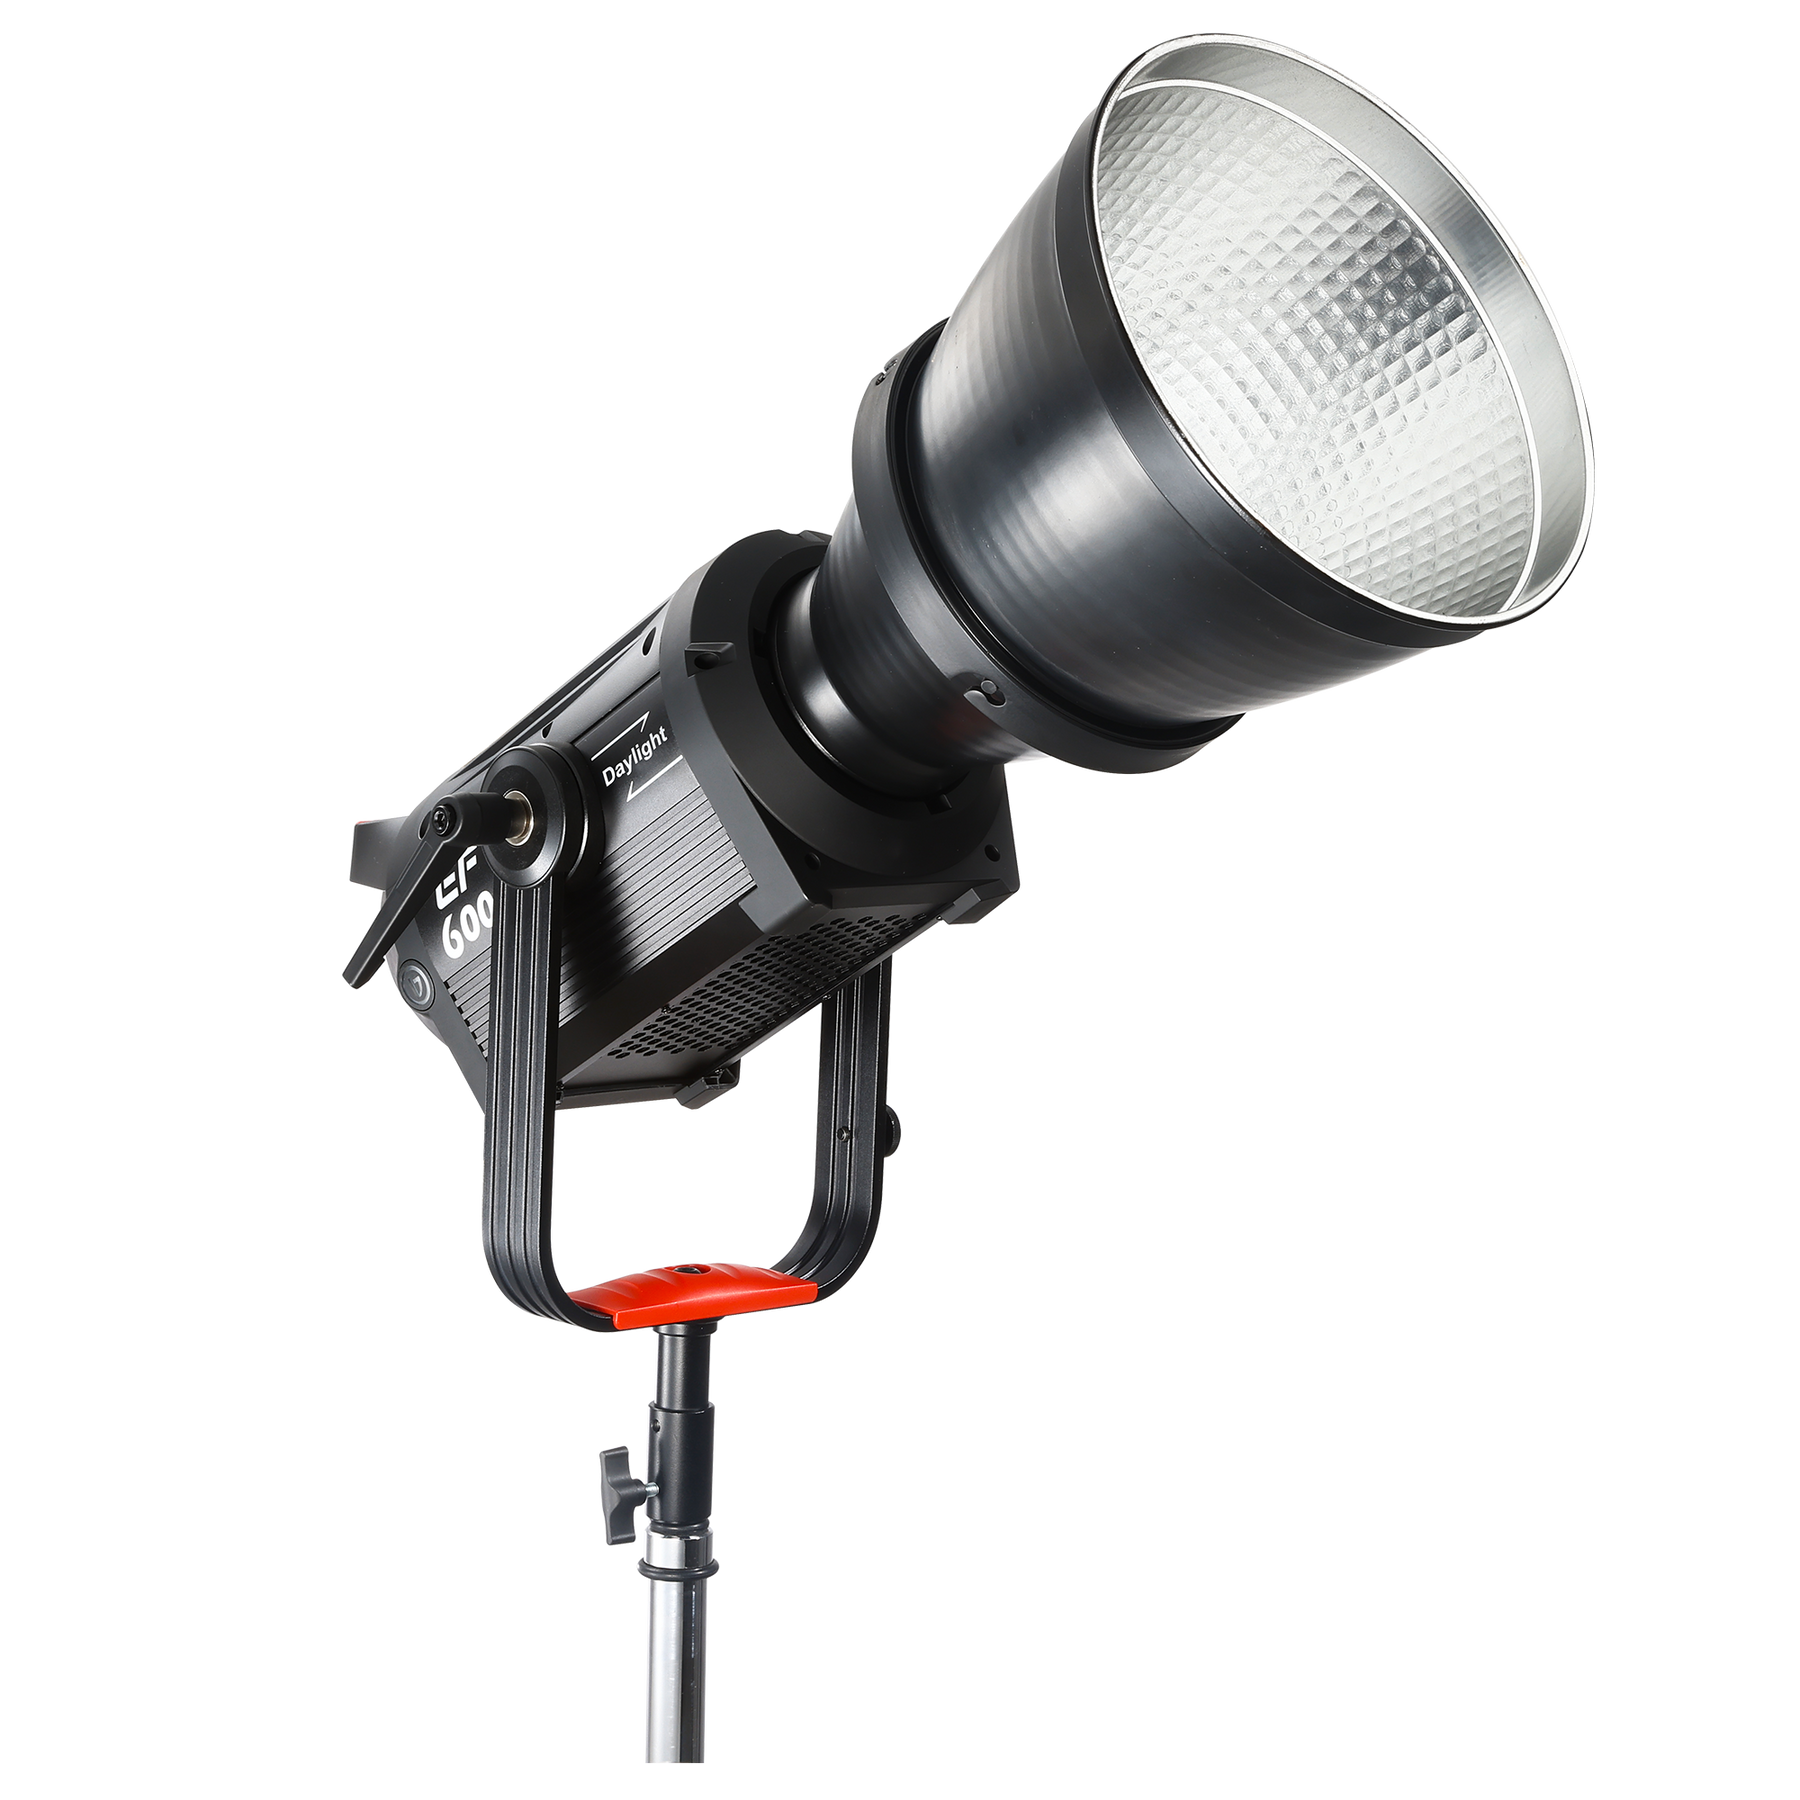 EF-600 Pro LED-Dauerlicht